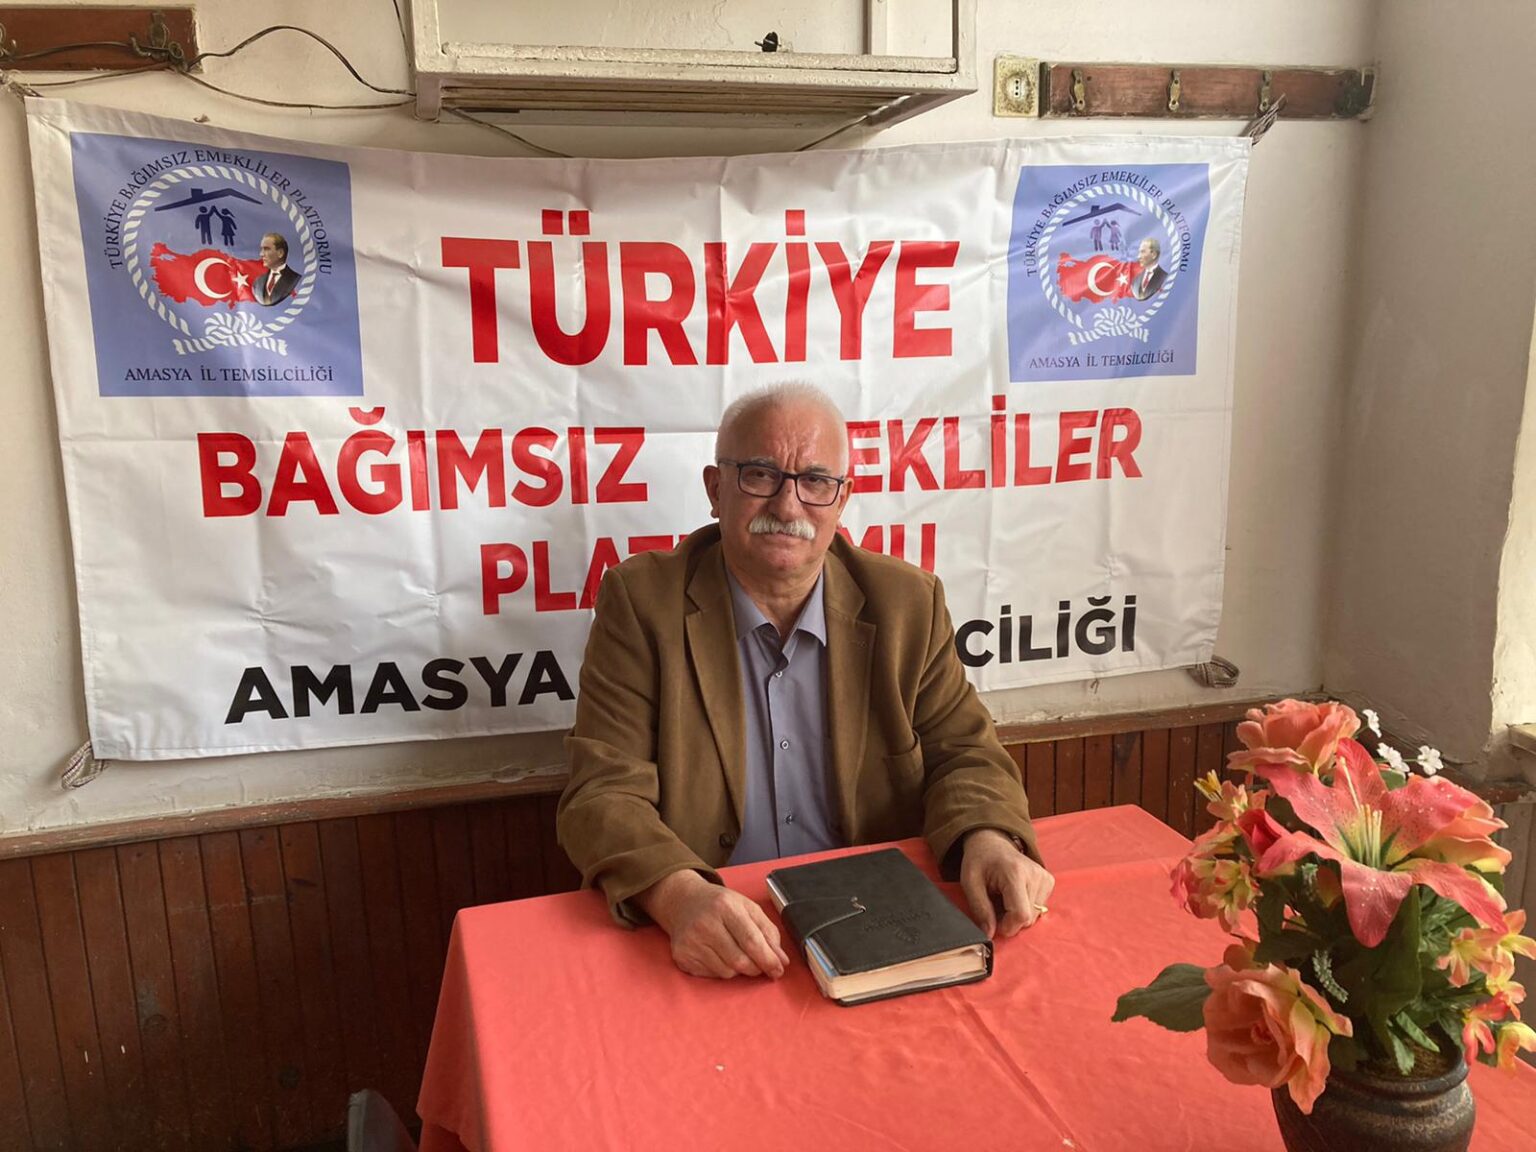 Emekliler Platformu Ankara’da Buluşacak